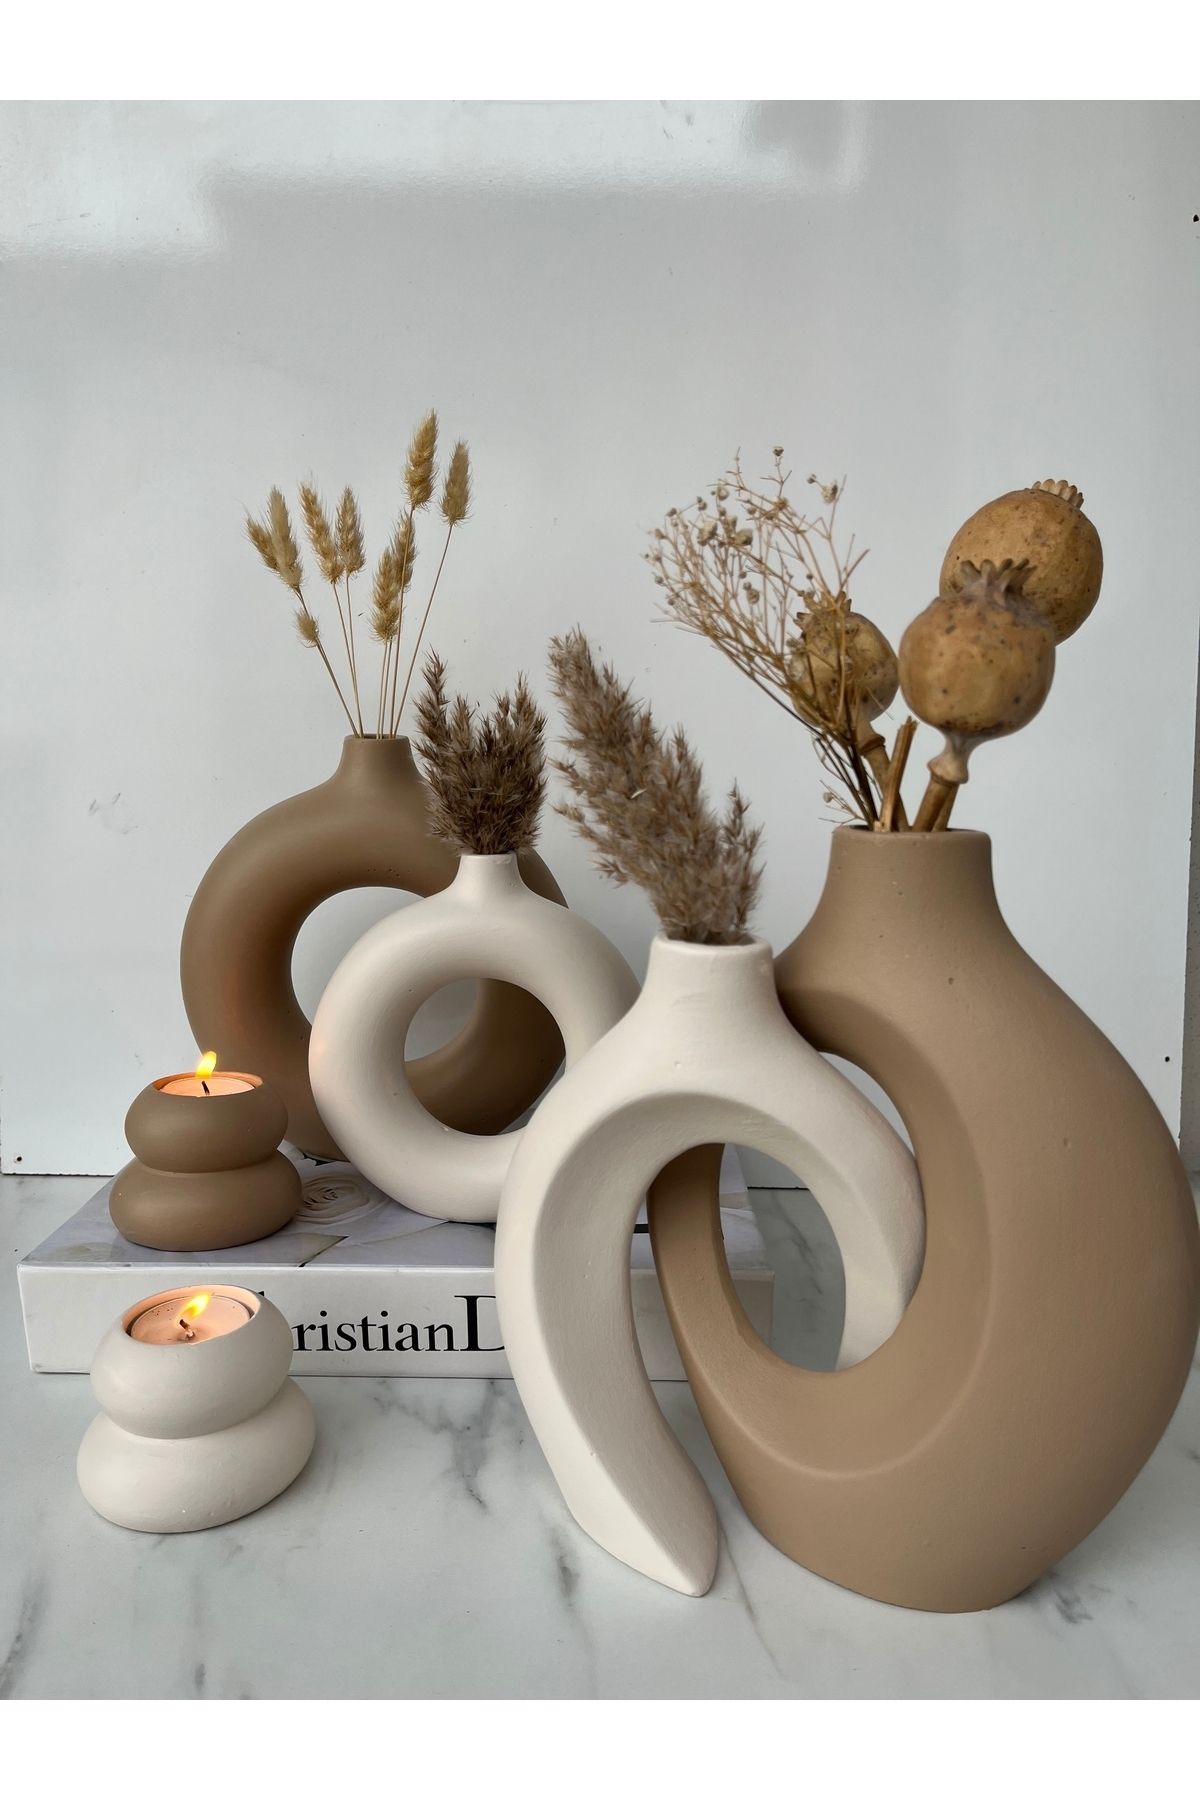 Home Sibel/Ela tasarım sevgili vazo set, dekoratif halka mumluklu set